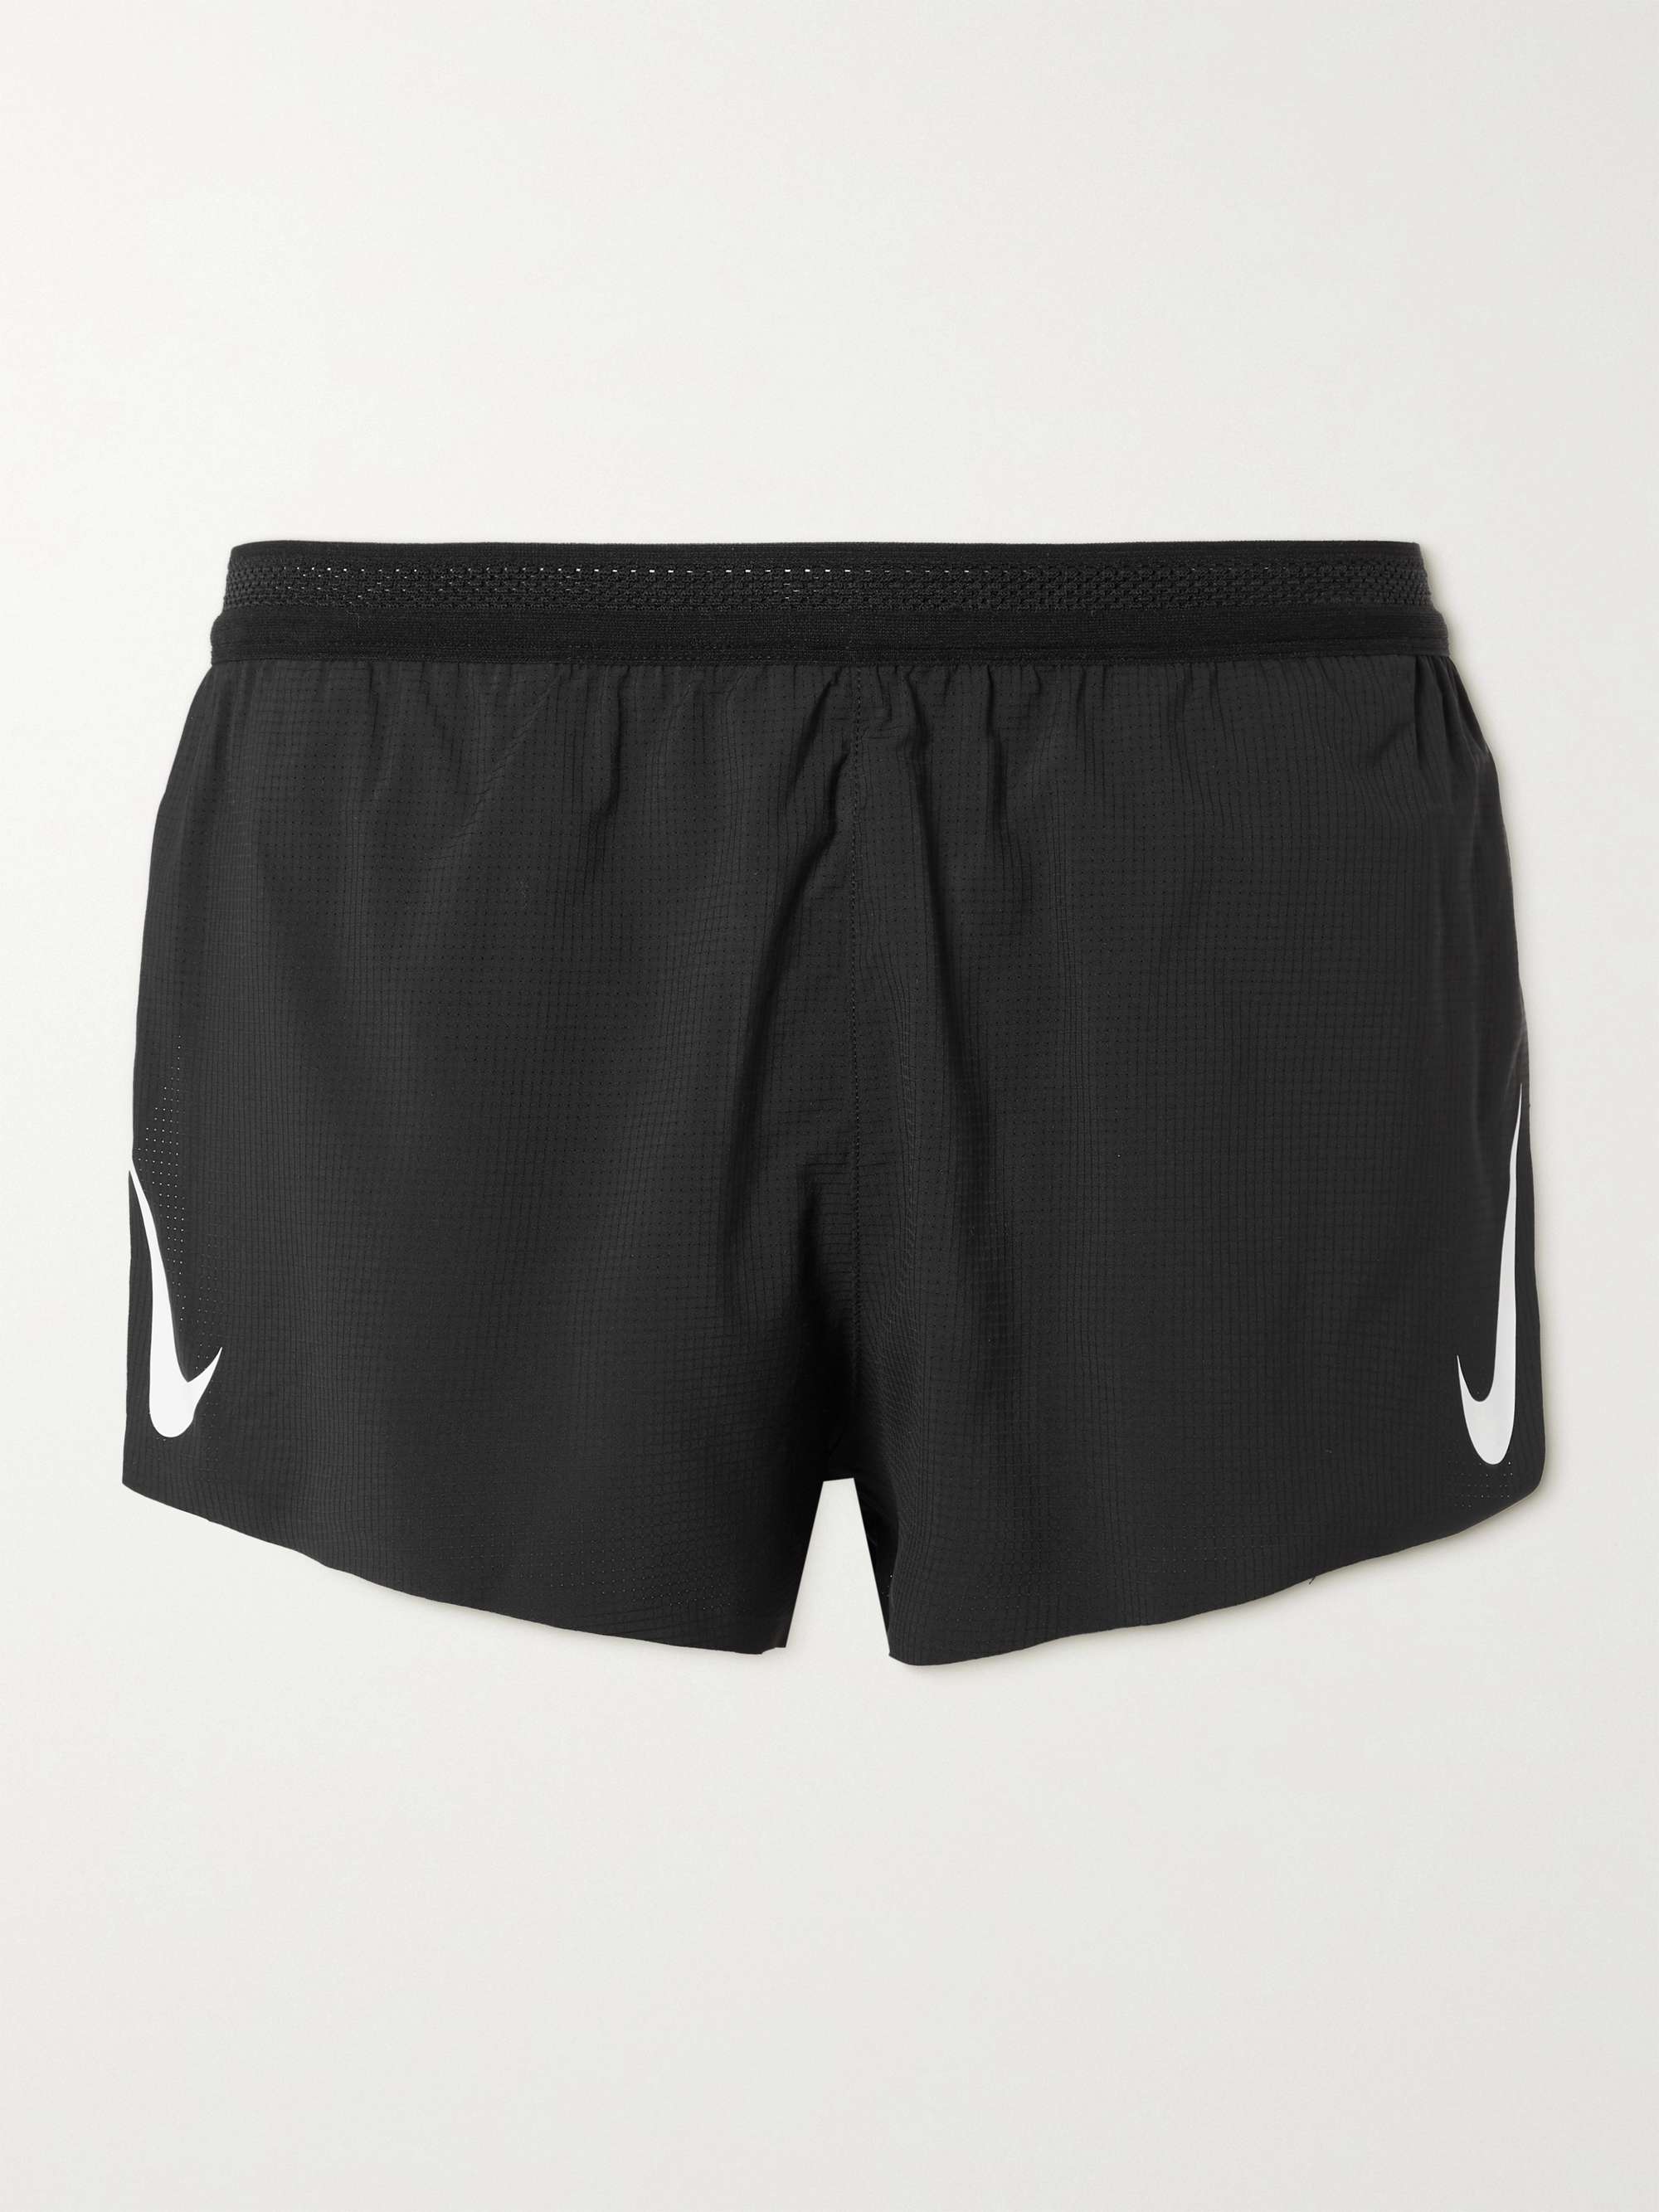 Nike Nike Aeroswift 4'' Running Shorts - Running shorts Men's